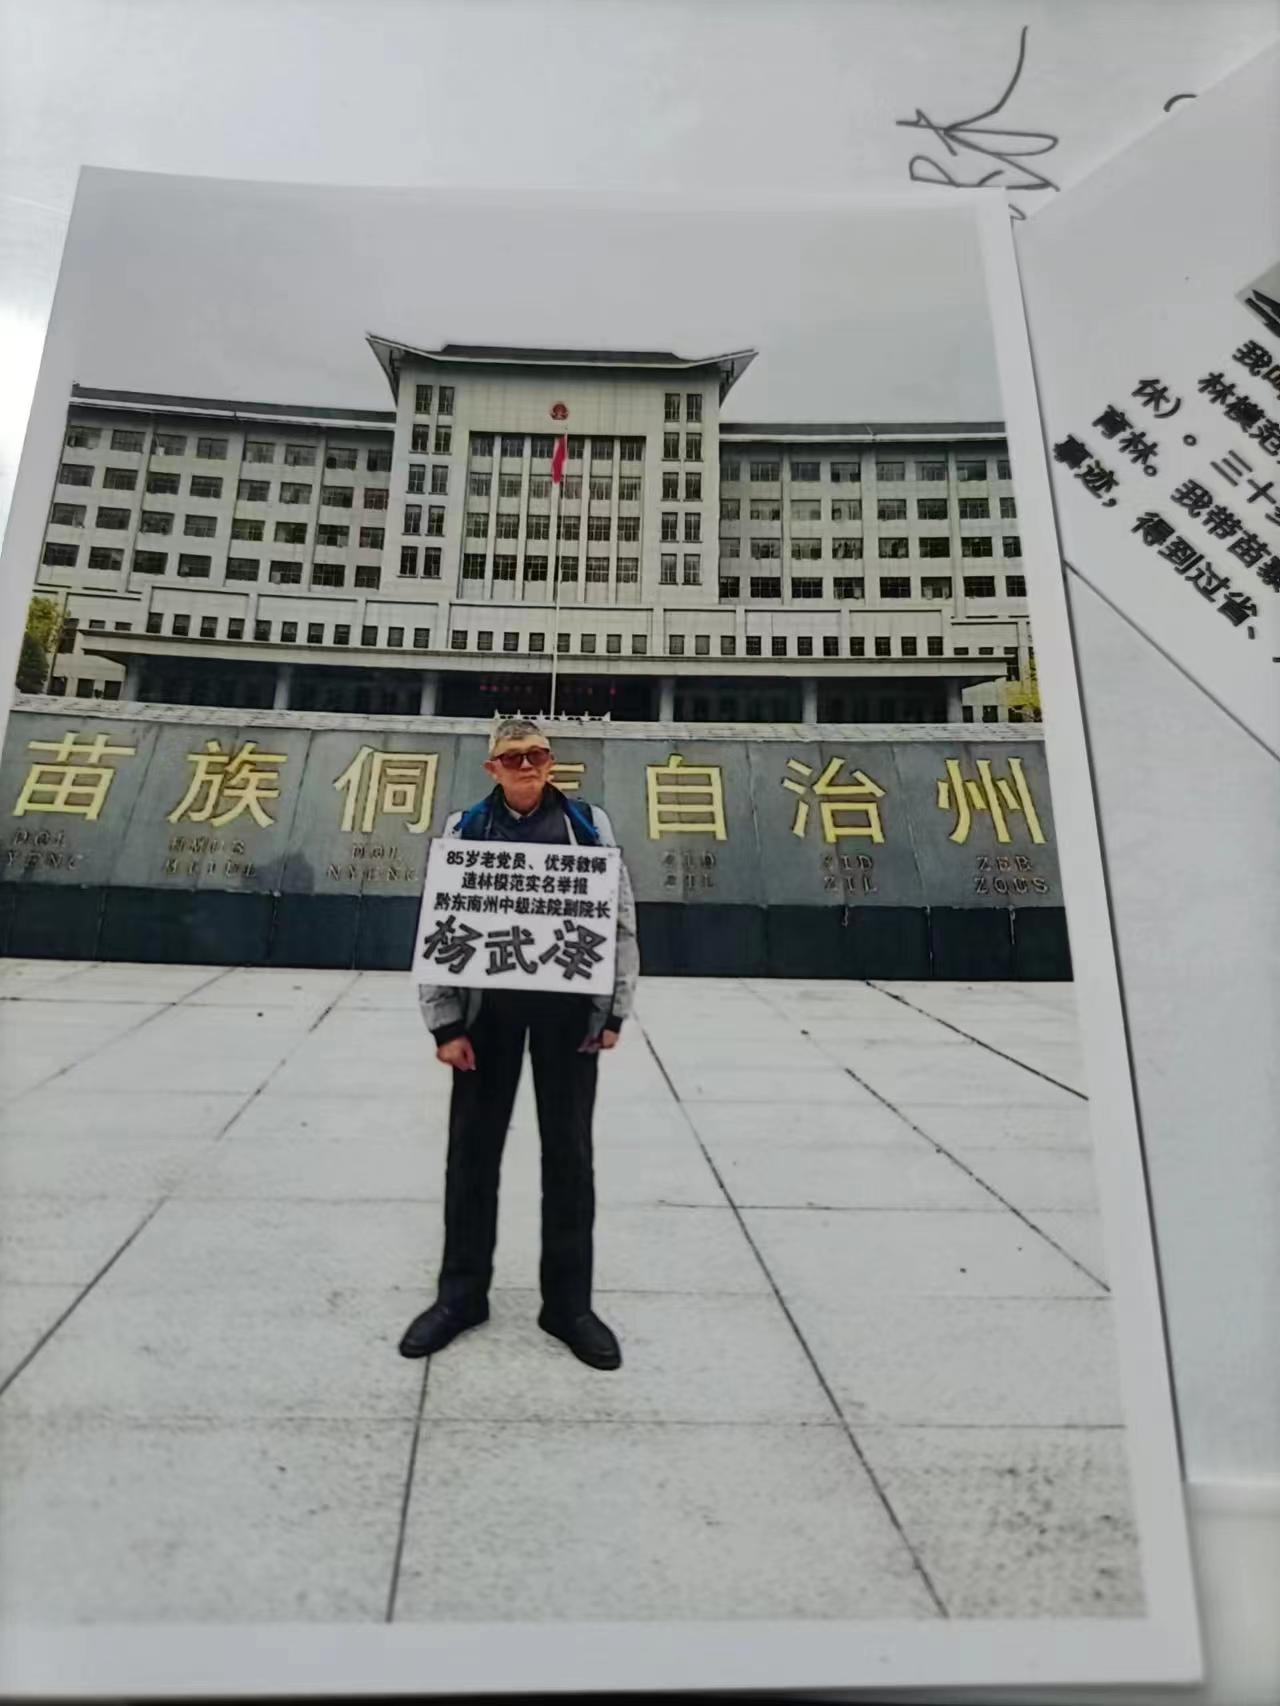 贵州黔东南榕江县一位87岁老教师维权之路“求司法公正”